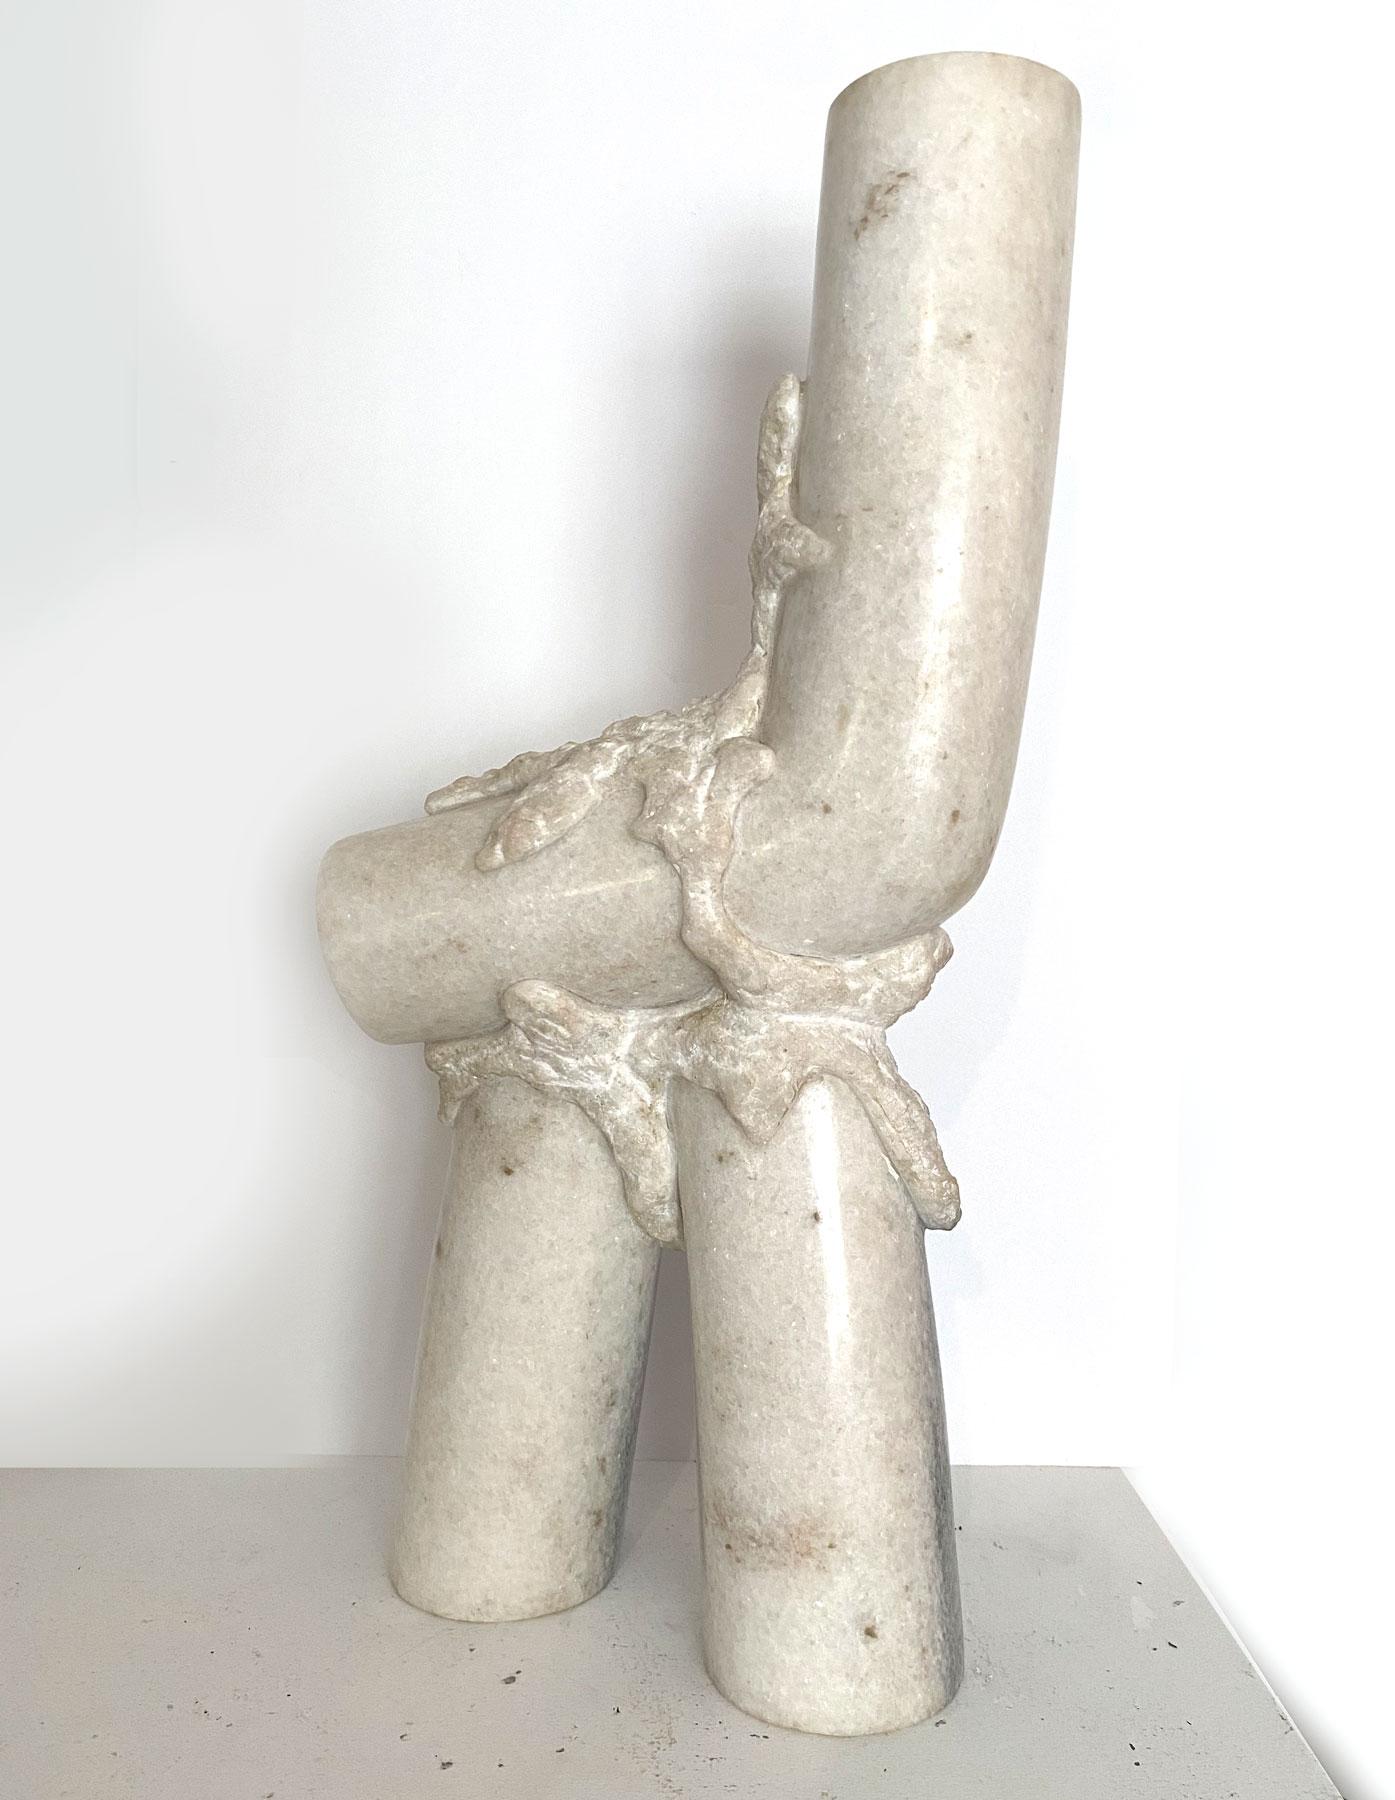 Außergewöhnliche handgemeißelte und polierte Skulptur aus weißem Marmor, CIRCA 1980er Jahre. Modernistisch und organisch. Künstler unbekannt, unsigniert. Ein echtes Statement.